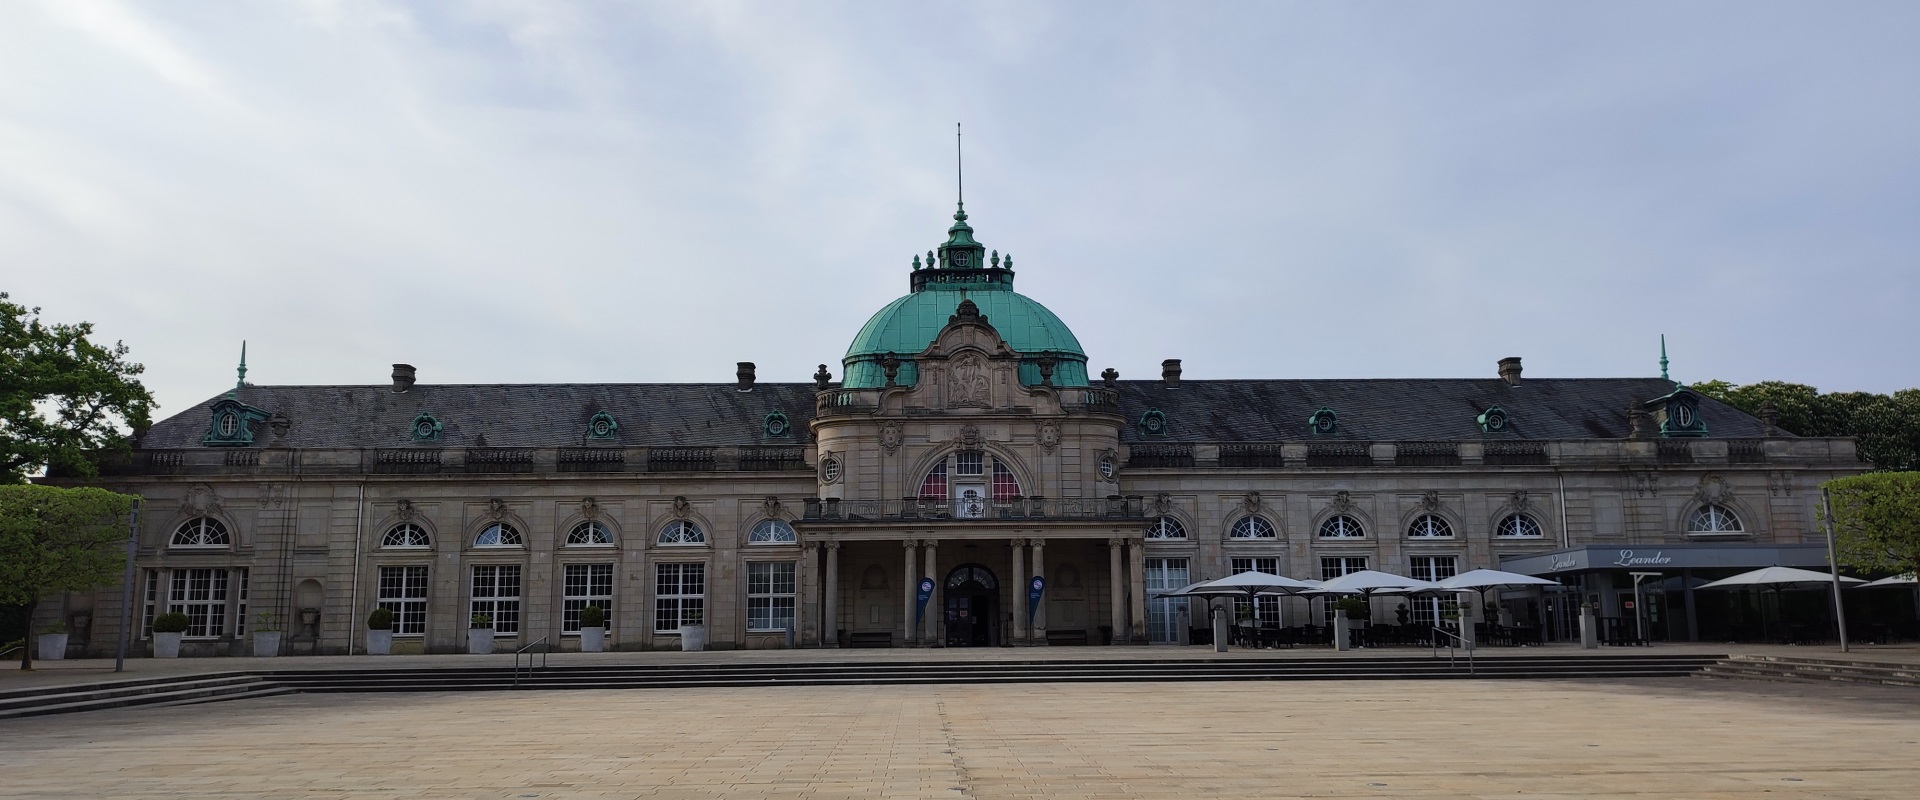 Das Deutsche Ausbildungsforum im Kaiserpalais Bad Oeynhausen